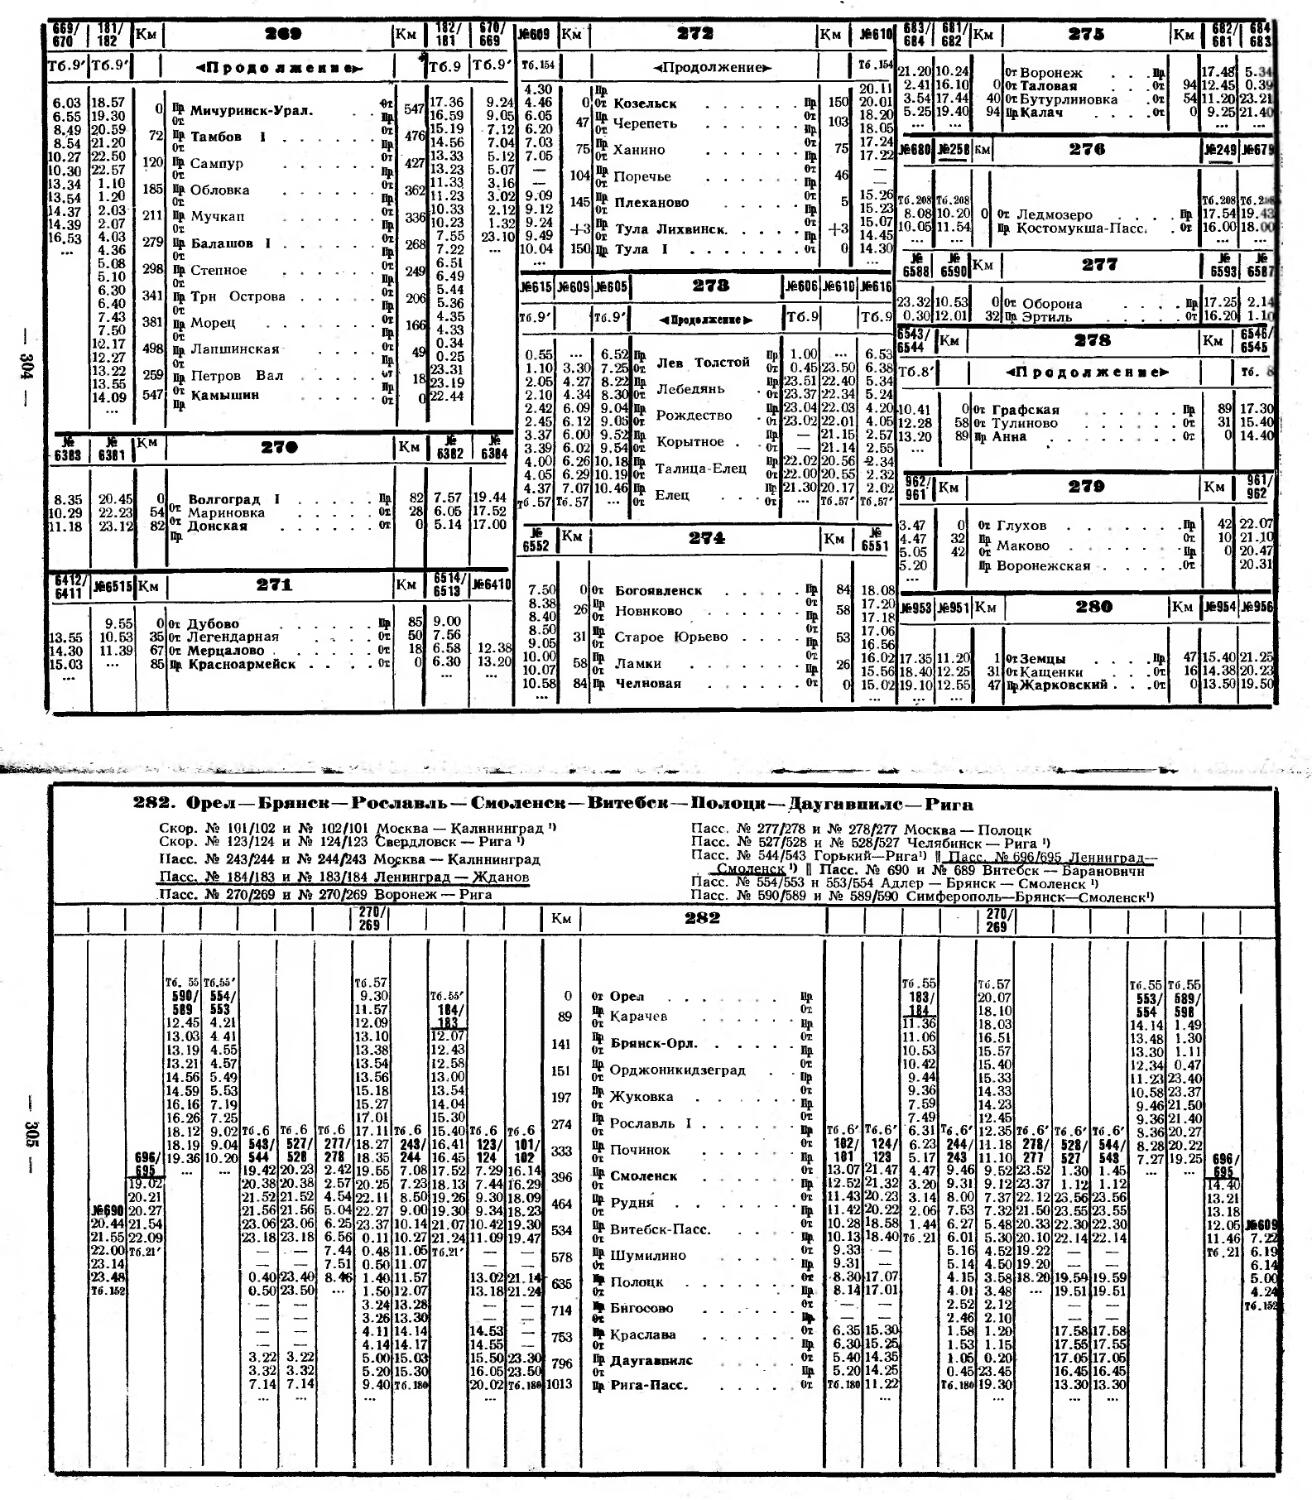 Расписание движения поездов по станции москва. Расписание движения поездов в виде таблицы.